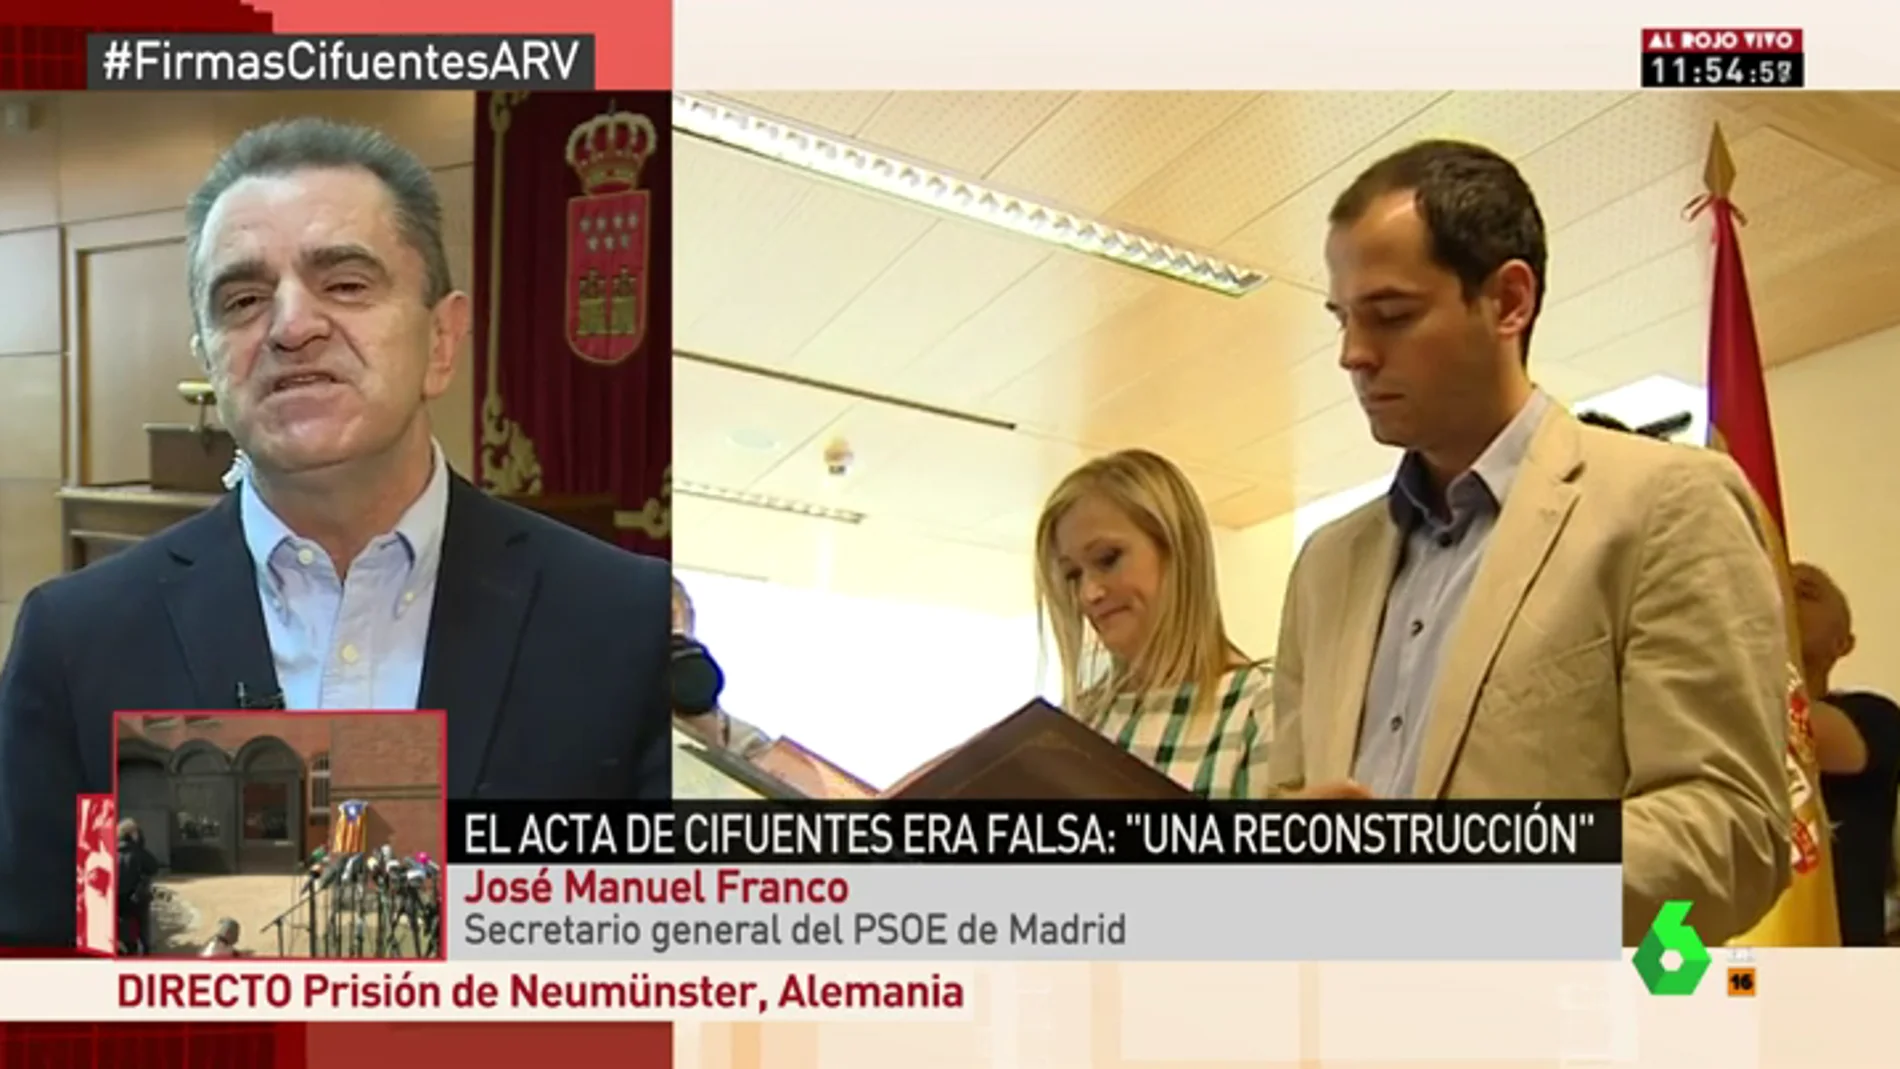 José Manuel Franco: "Hay responsabilidad política de Cifuentes. No existe máster ni trabajo y existe un auténtico sainete"